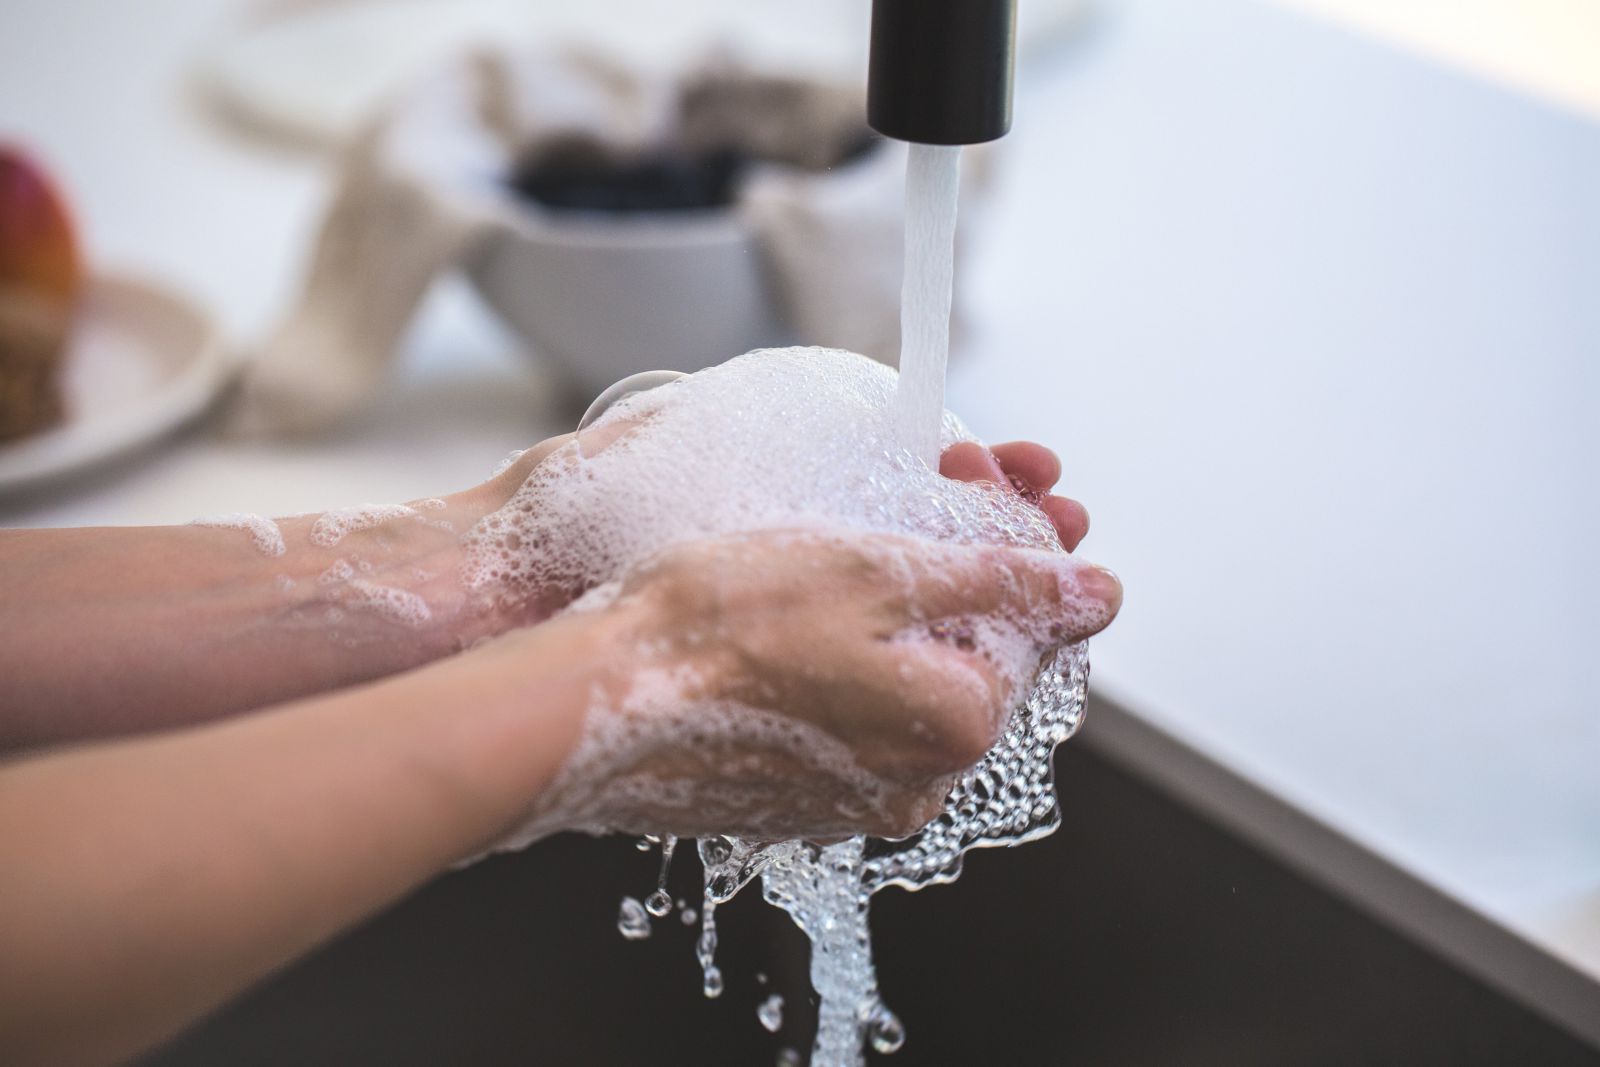 Pessoa lavando as mãos